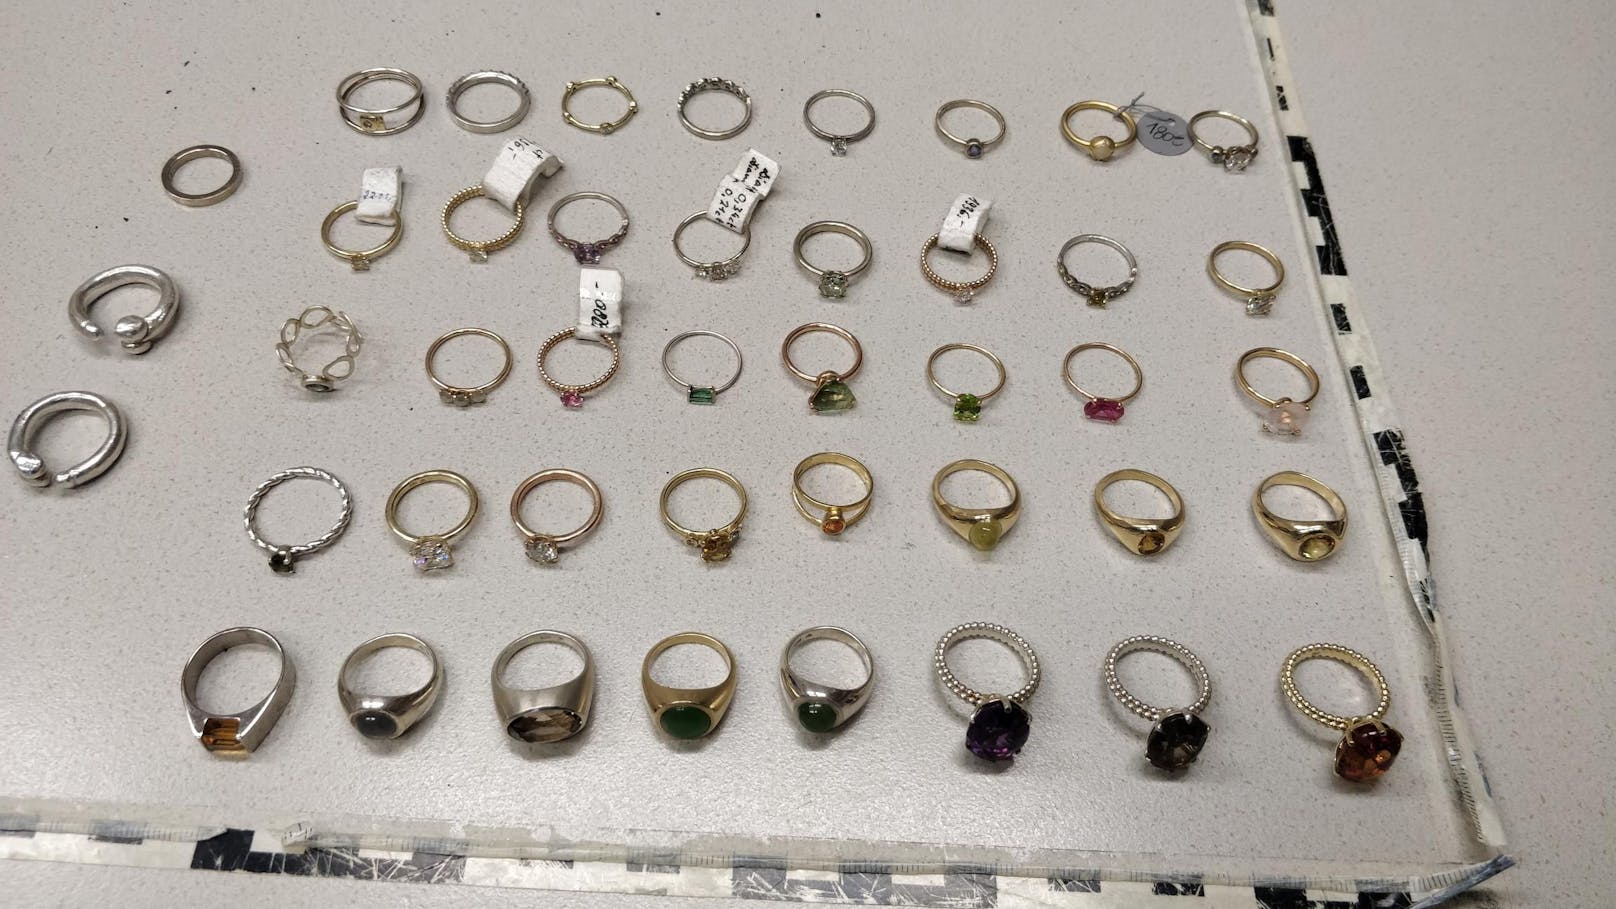 Einbruchsserie bei Juwelieren geklärt – 600.000€ Schaden